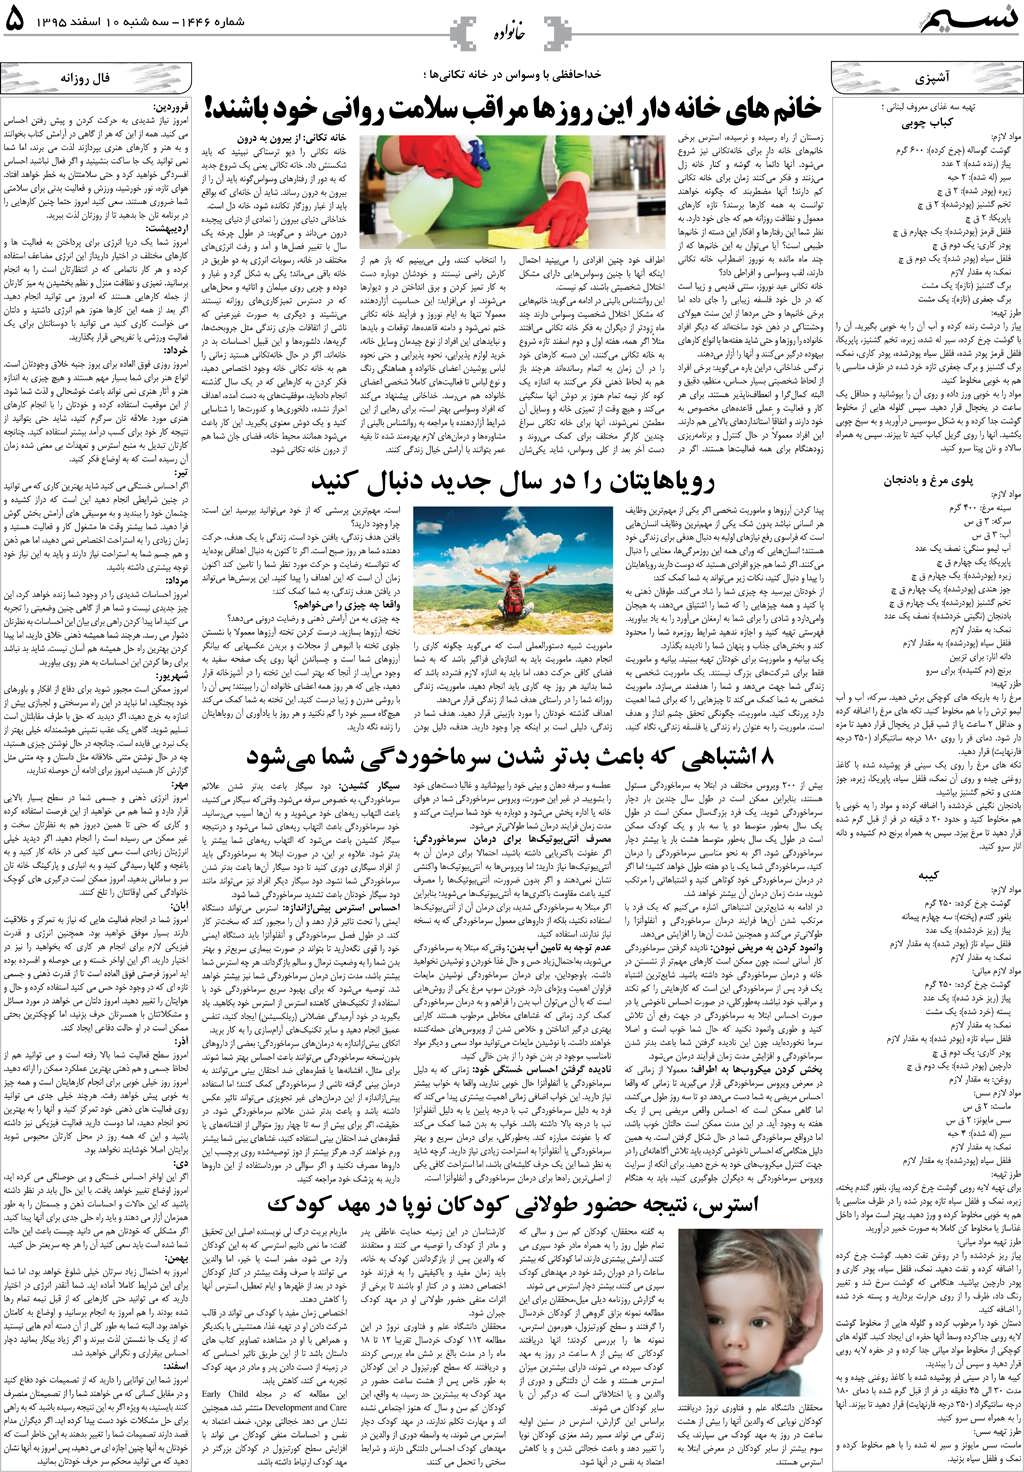 صفحه خانواده روزنامه نسیم شماره 1446